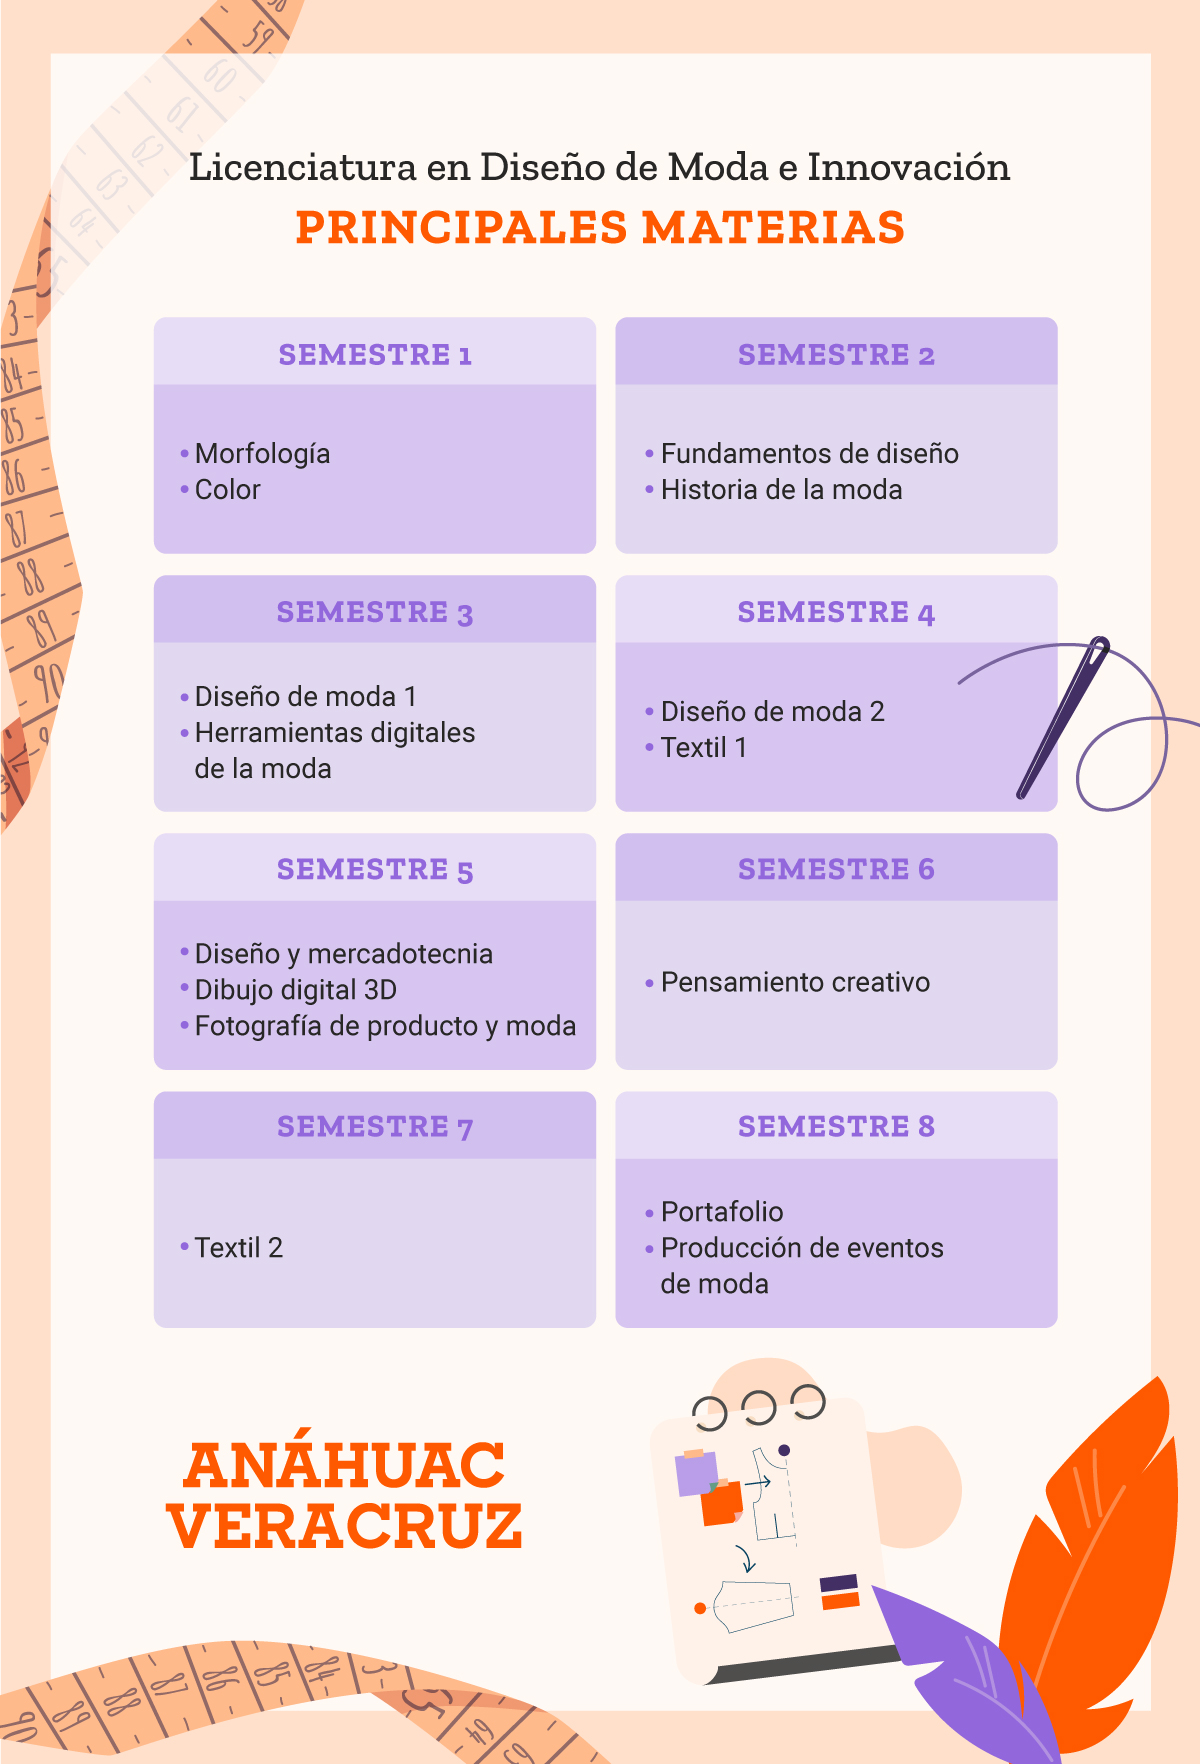 AnahuacVeracruz_Infografia-DiseñoDeModas_1200w_PlanEstudios_V02